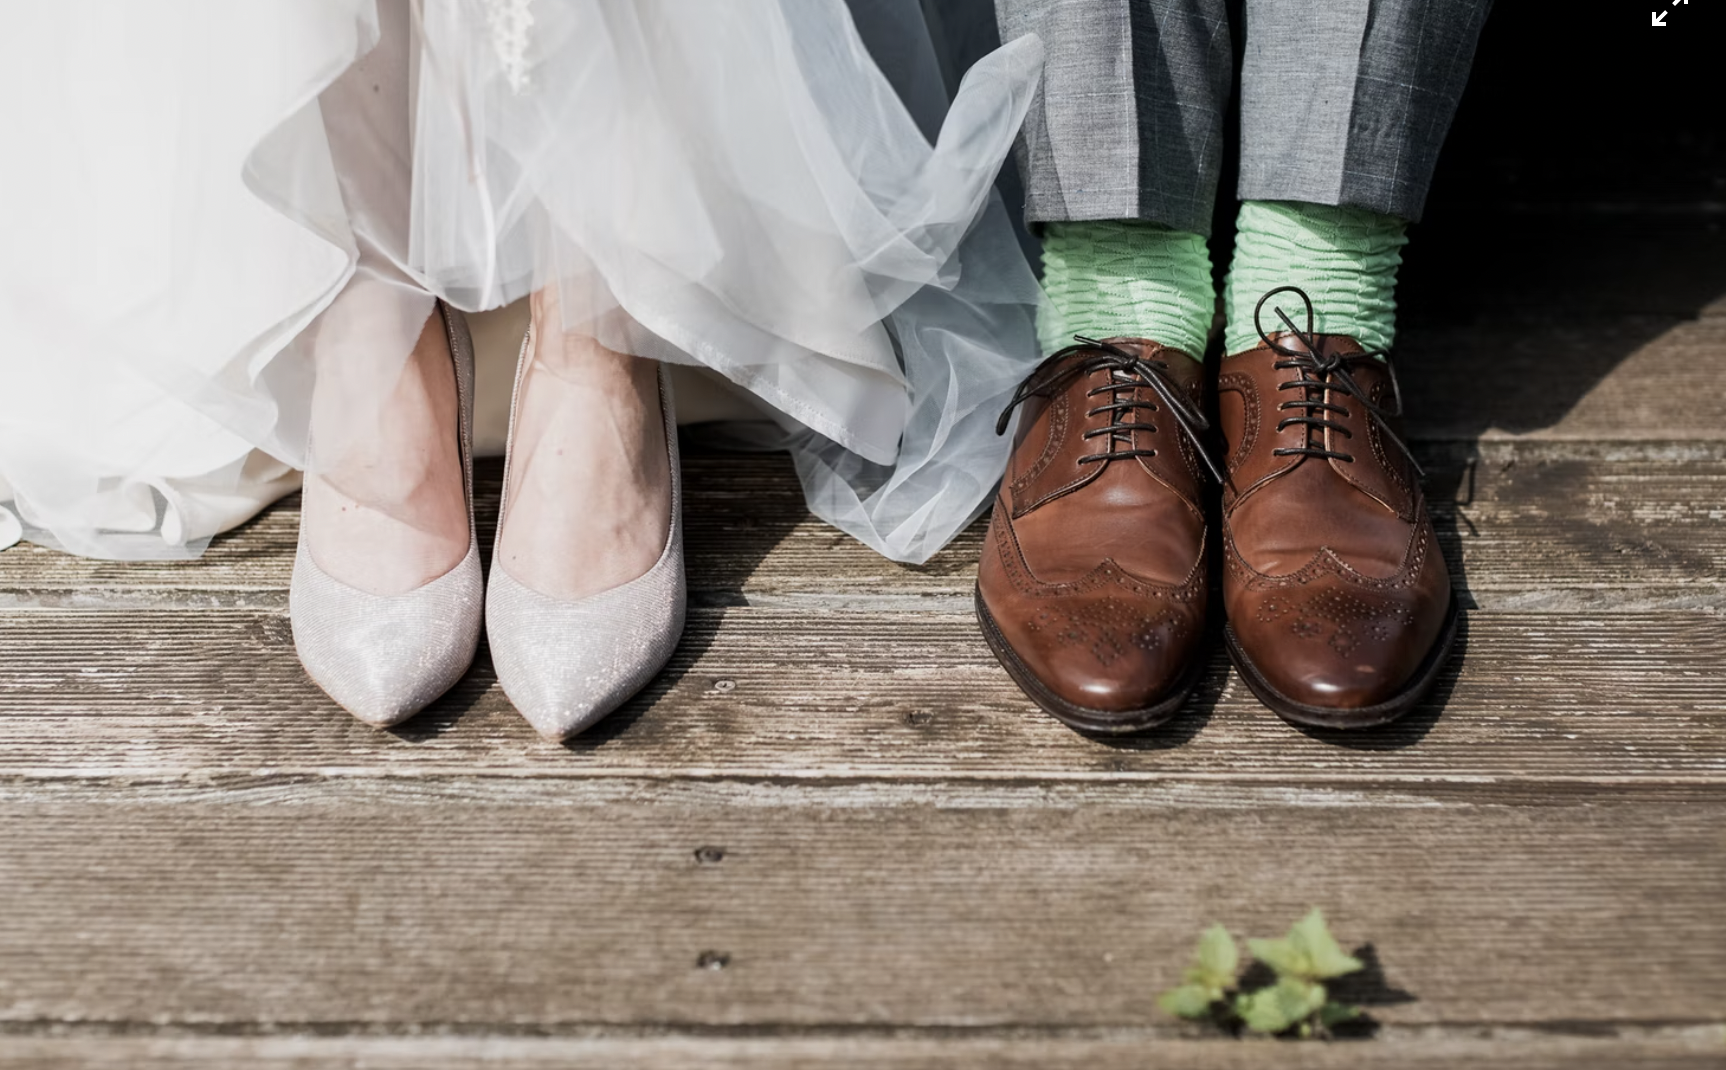 Top Three Wedding Attire Regrets Brides Have Image